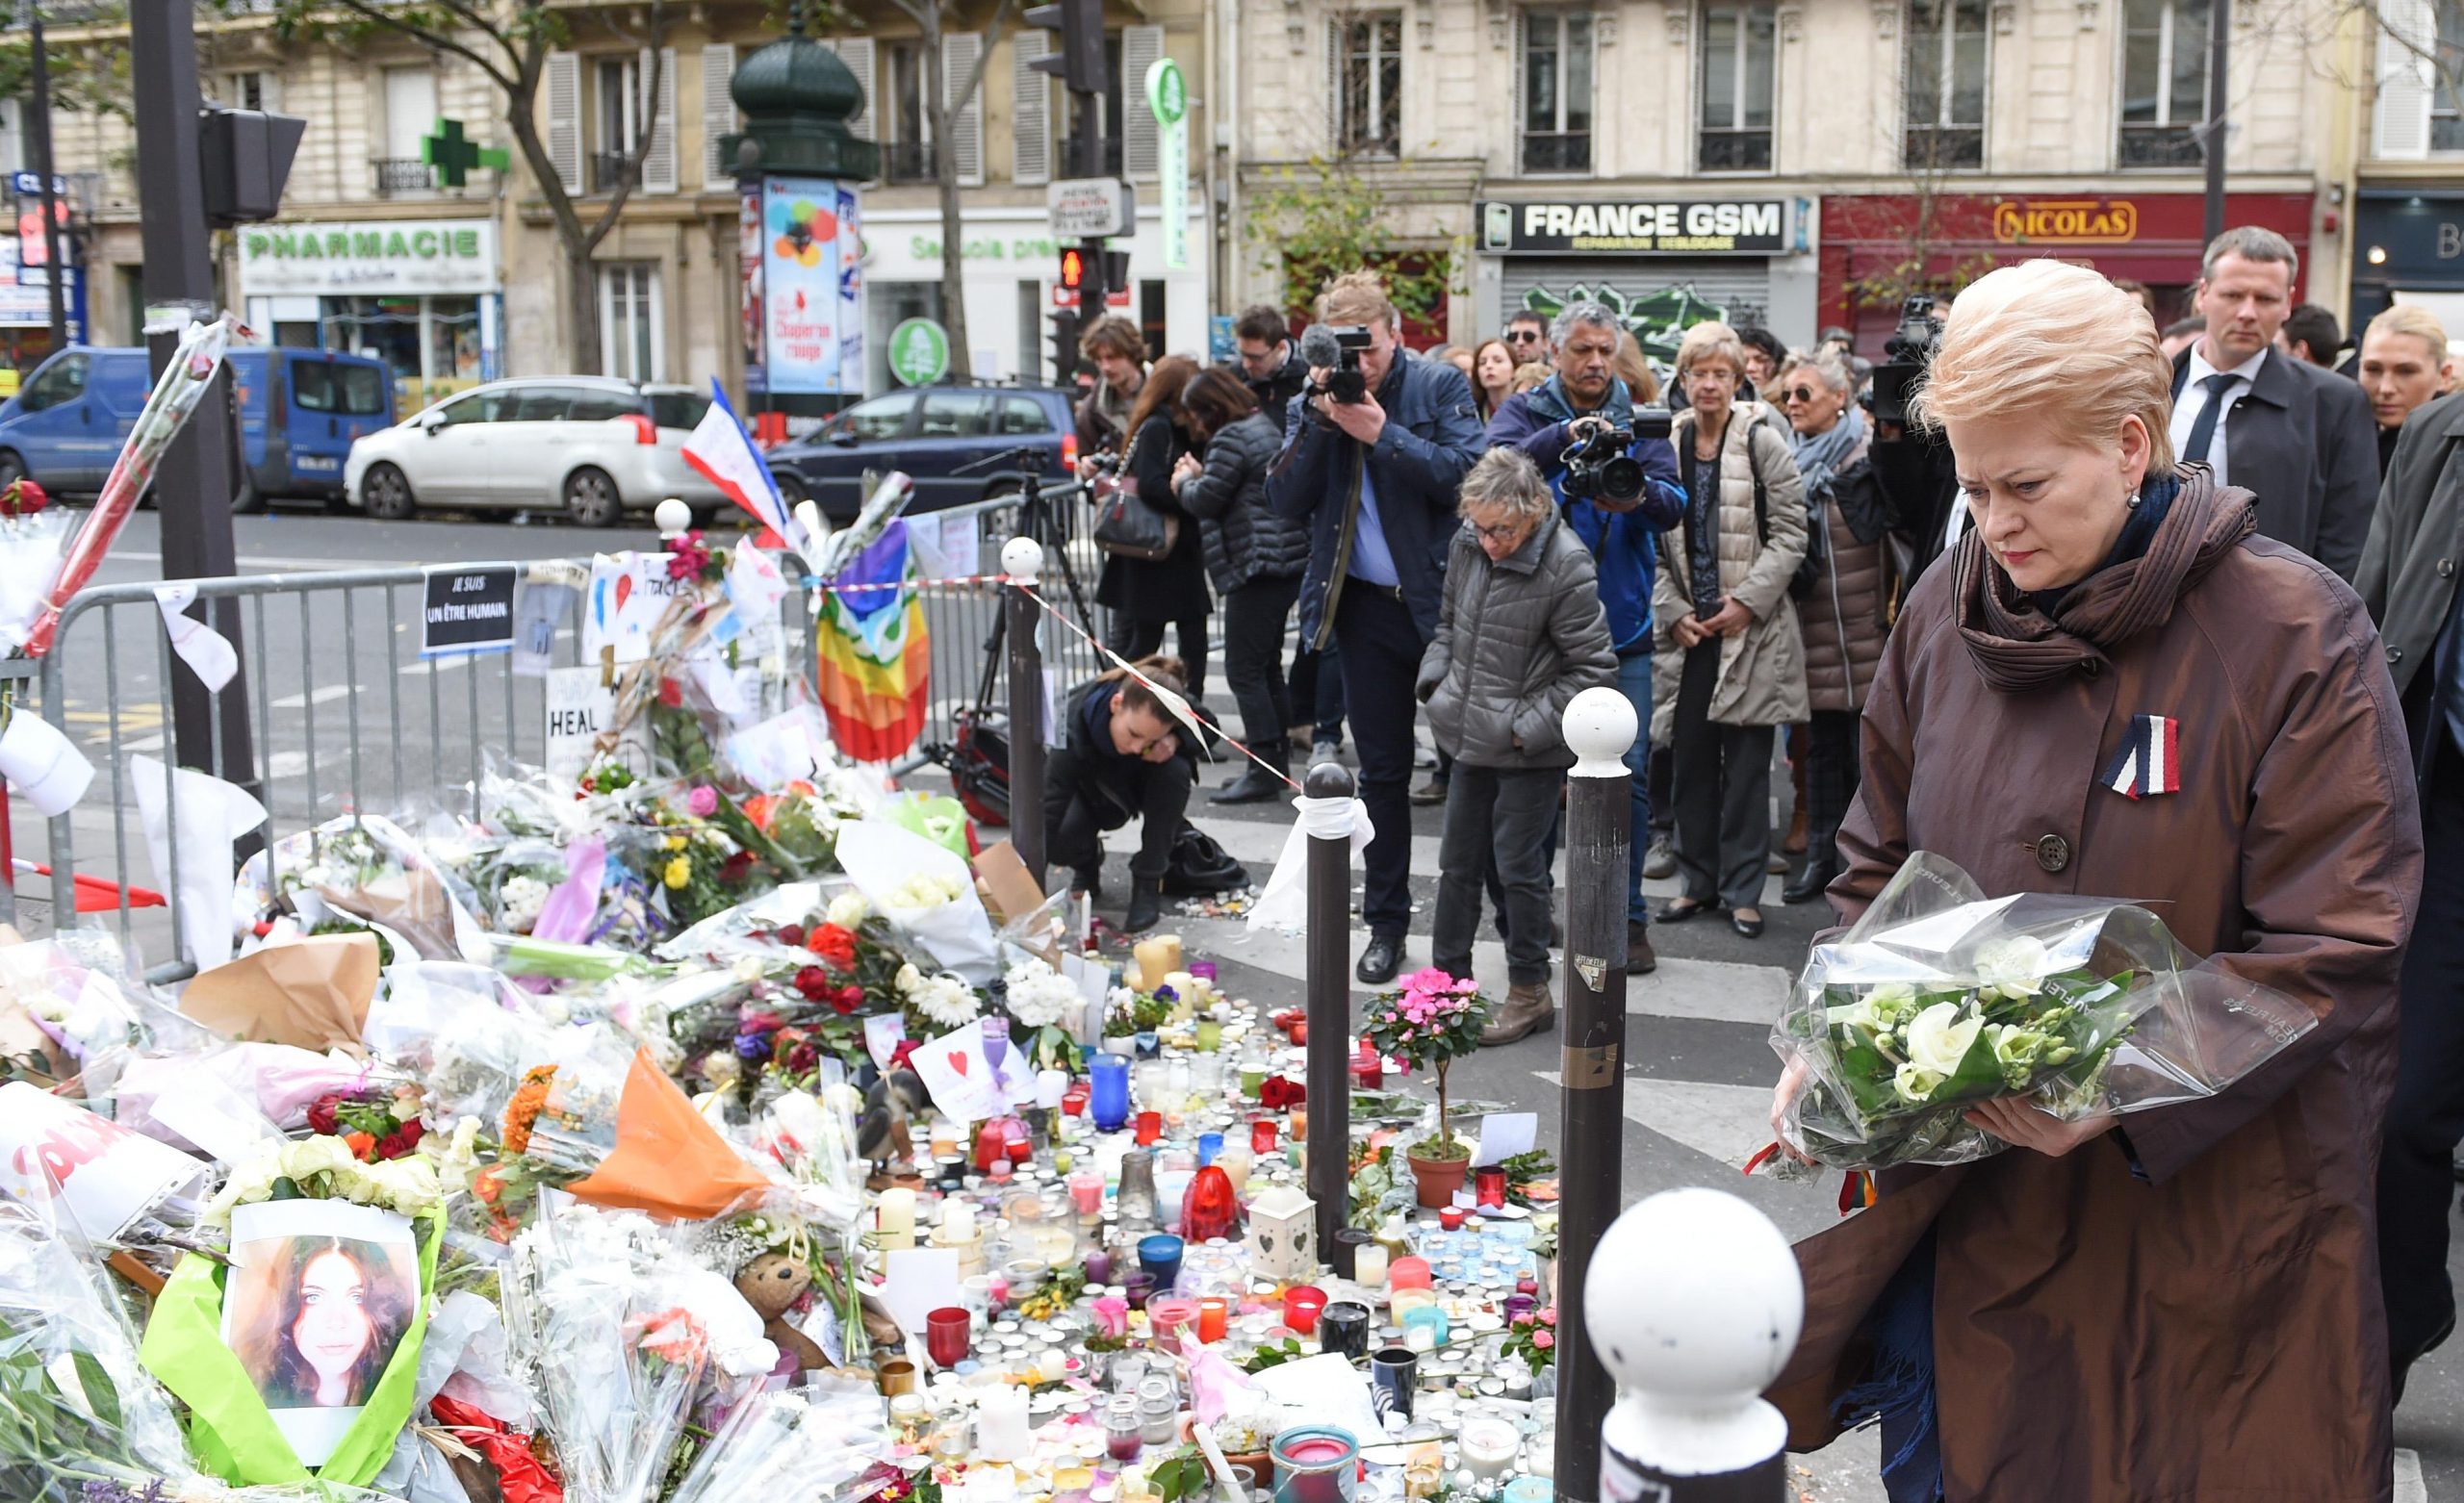 Pagerbė penktadienį Prancūzijos sostinėje įvykdytų teroro išpuolių aukas / Dalia Grybauskaitė